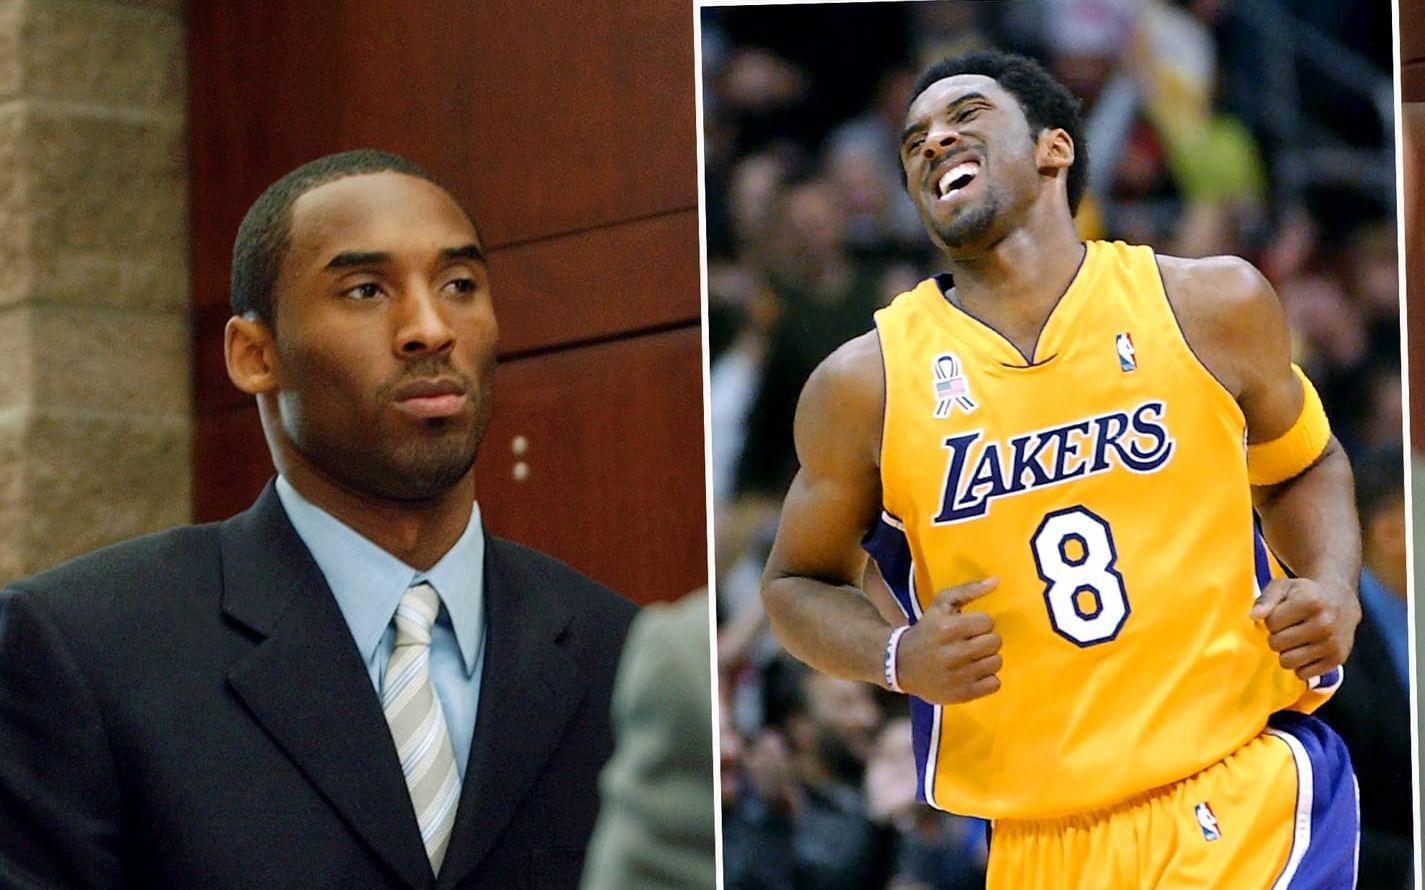 6. En 19-årig kvinna anklagade Kobe Bryant för våldtäkt i juni 2003. Lakersstjärnan nekade först, men erkände sedan att de hade haft sex. Det slutade med att parterna nådde en uppgörelse. Skandalen hotade Bryants äktenskap och var ett hårt slag mot hans rykte i NBA. Foto: TT